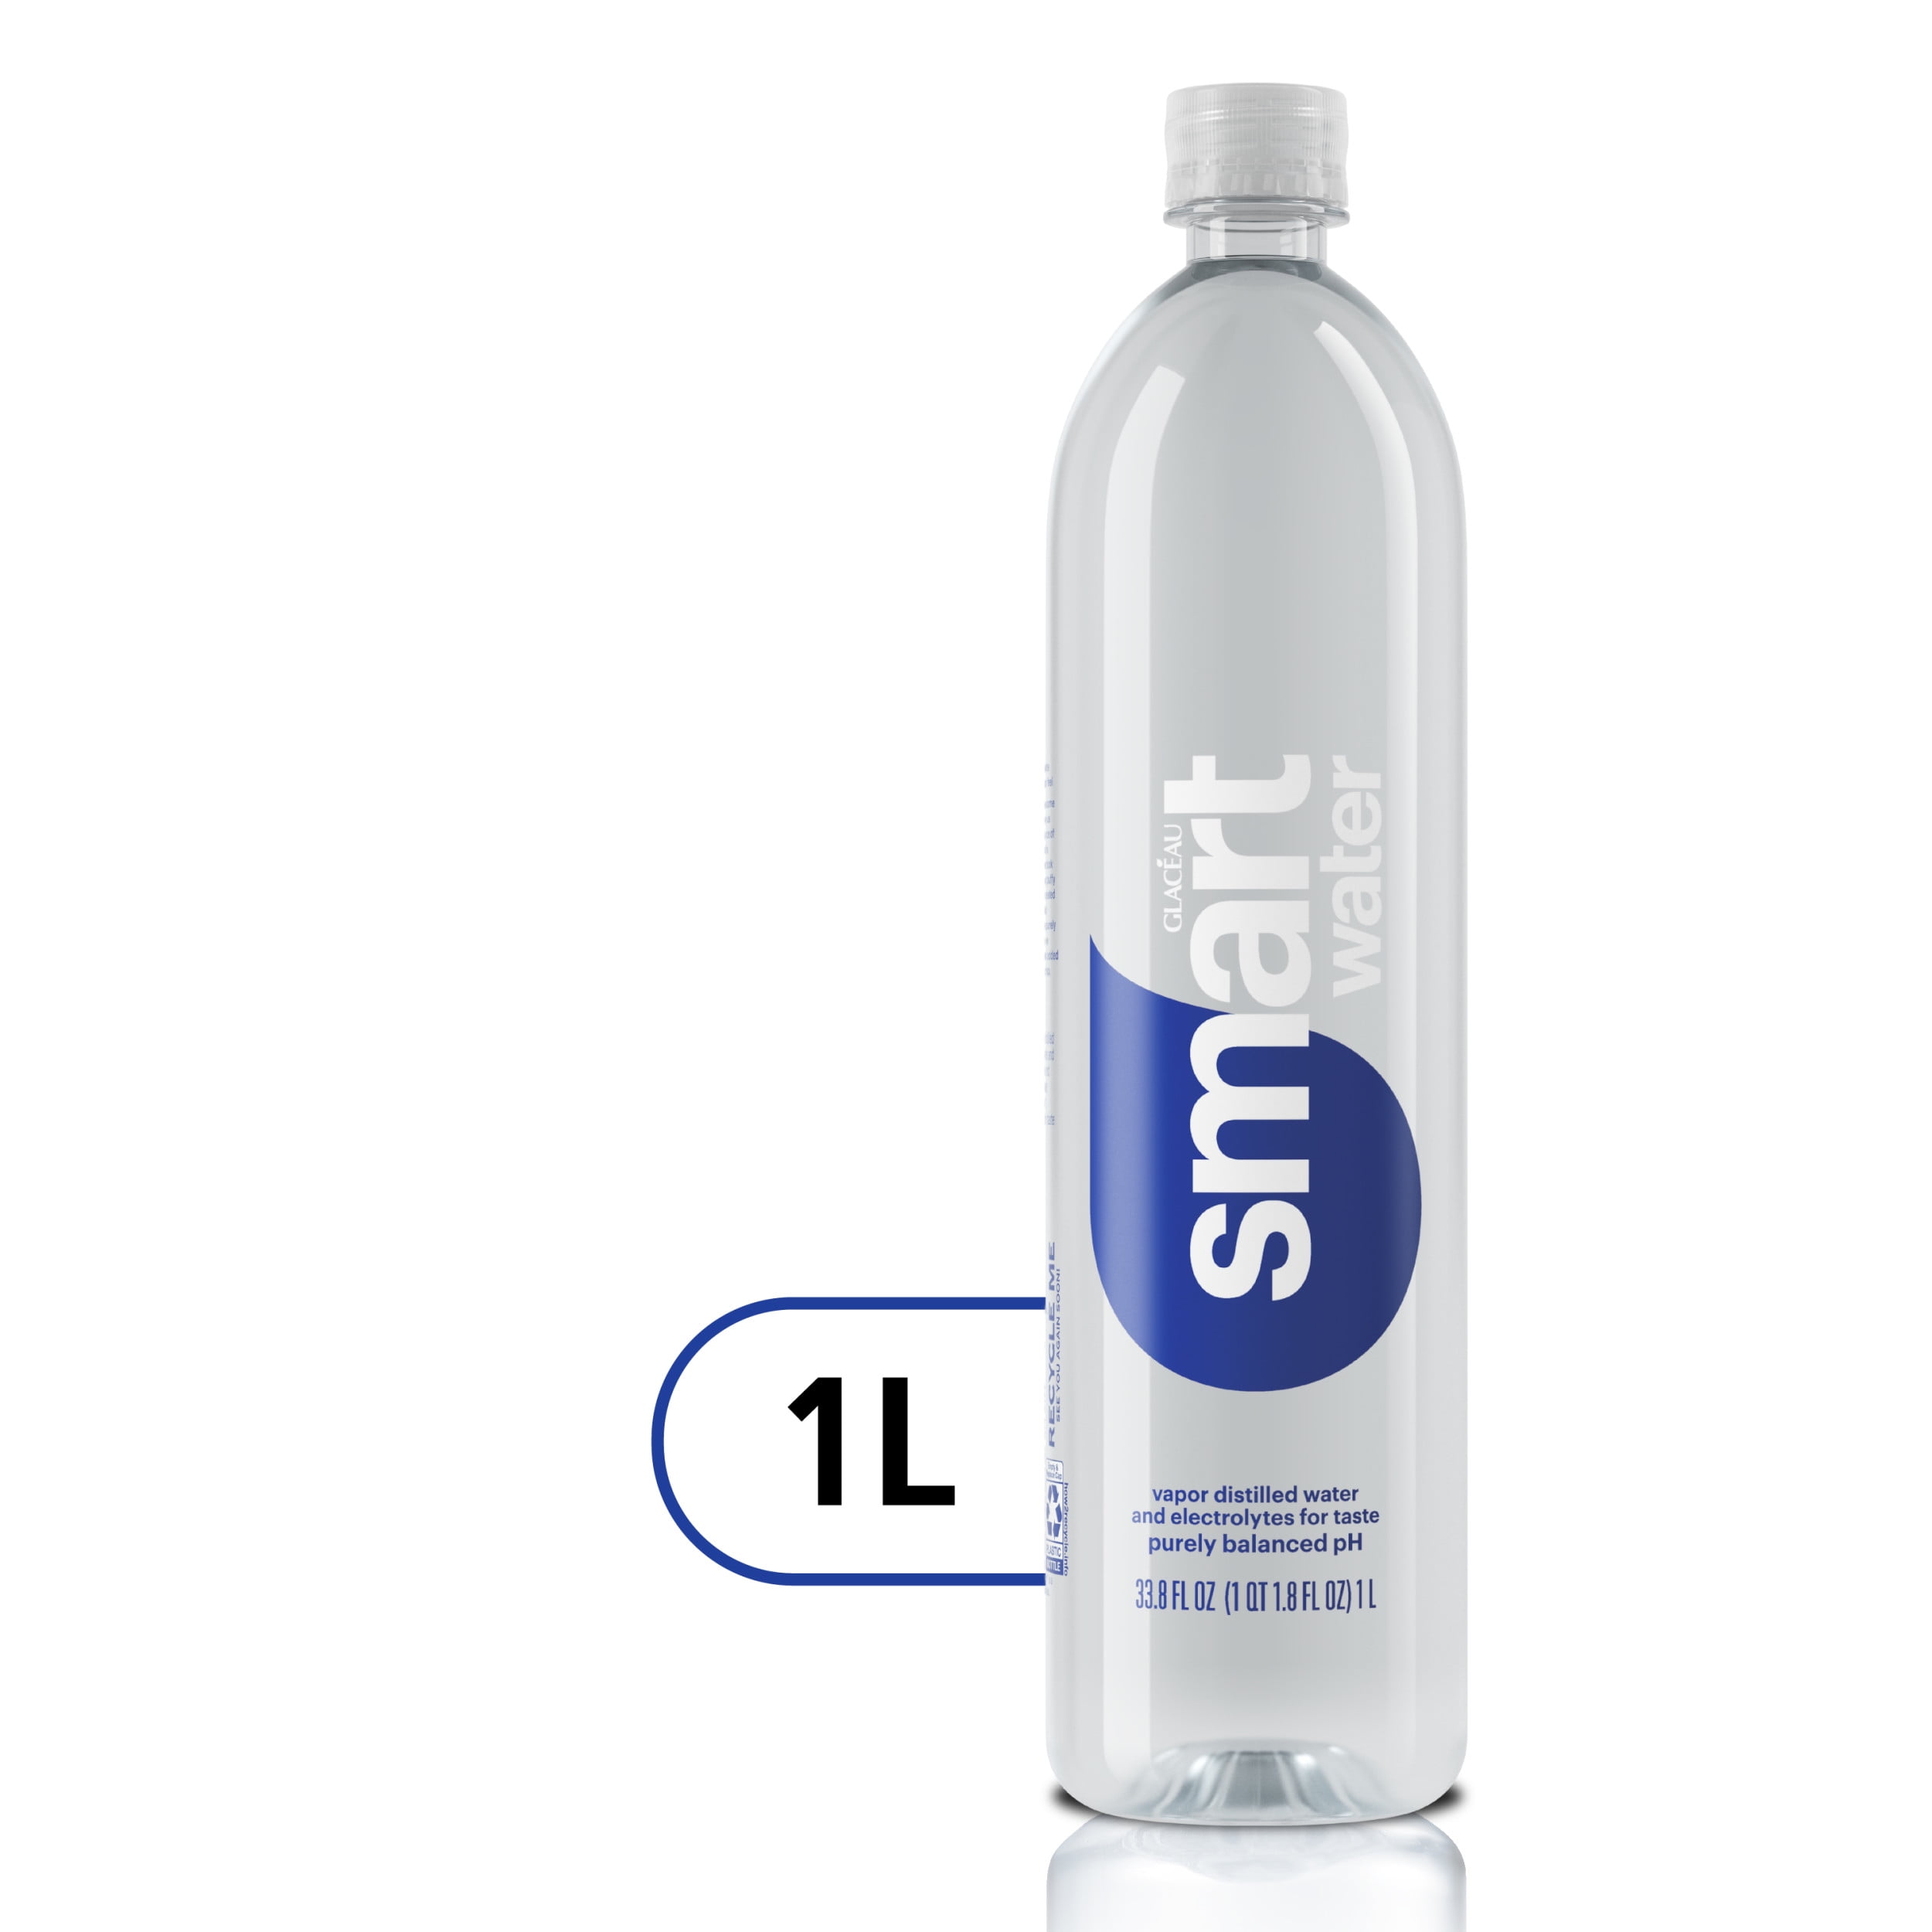 nul vertraging Renovatie smartwater vapor distilled premium water, 1 liter, bottle - Walmart.com